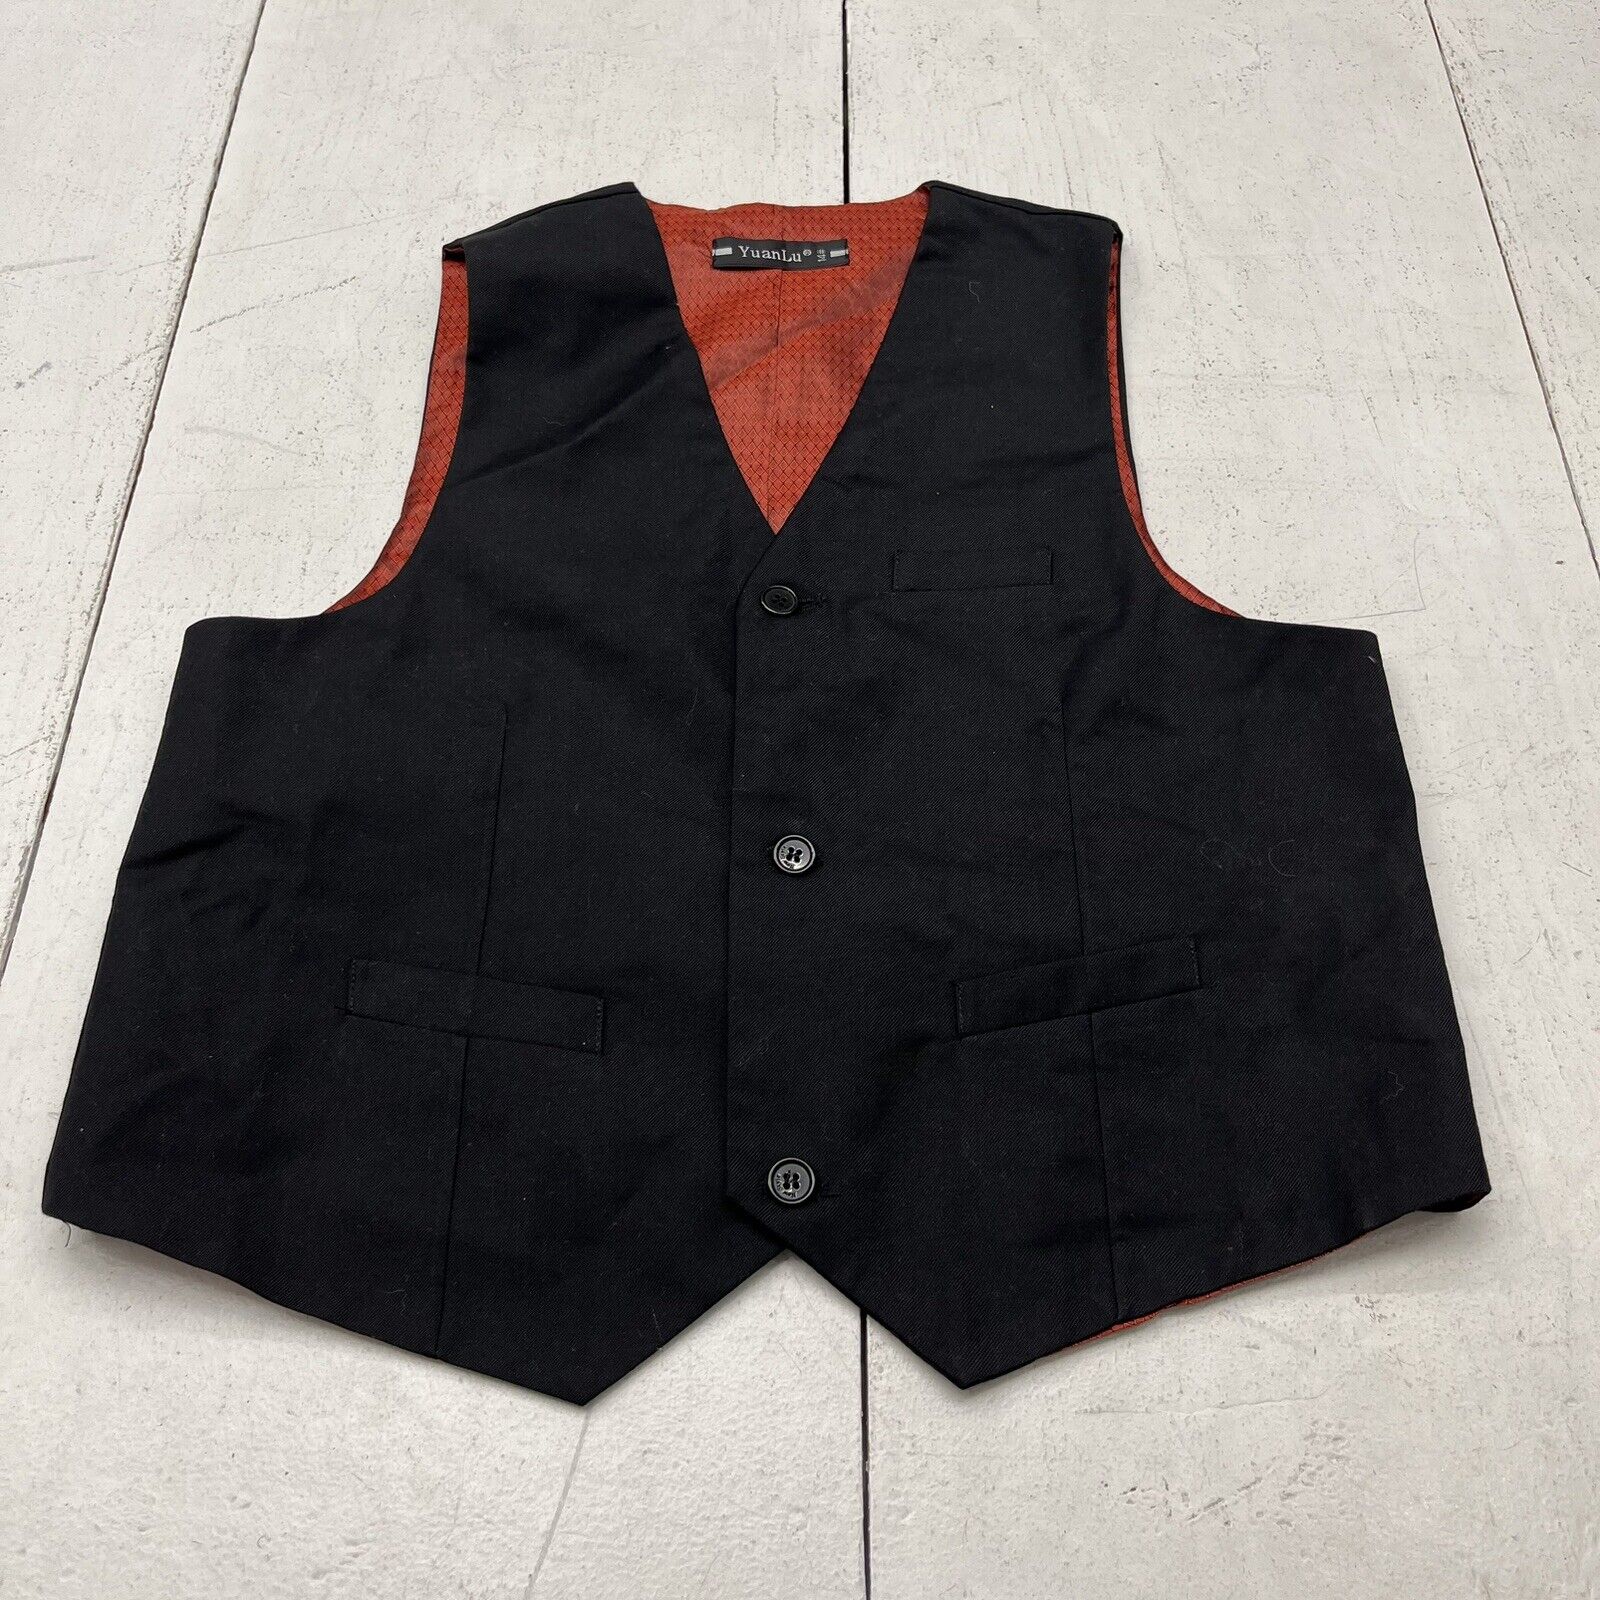 YuanLu Black Suit Vest Unisex Kids Size Large (14) NEW